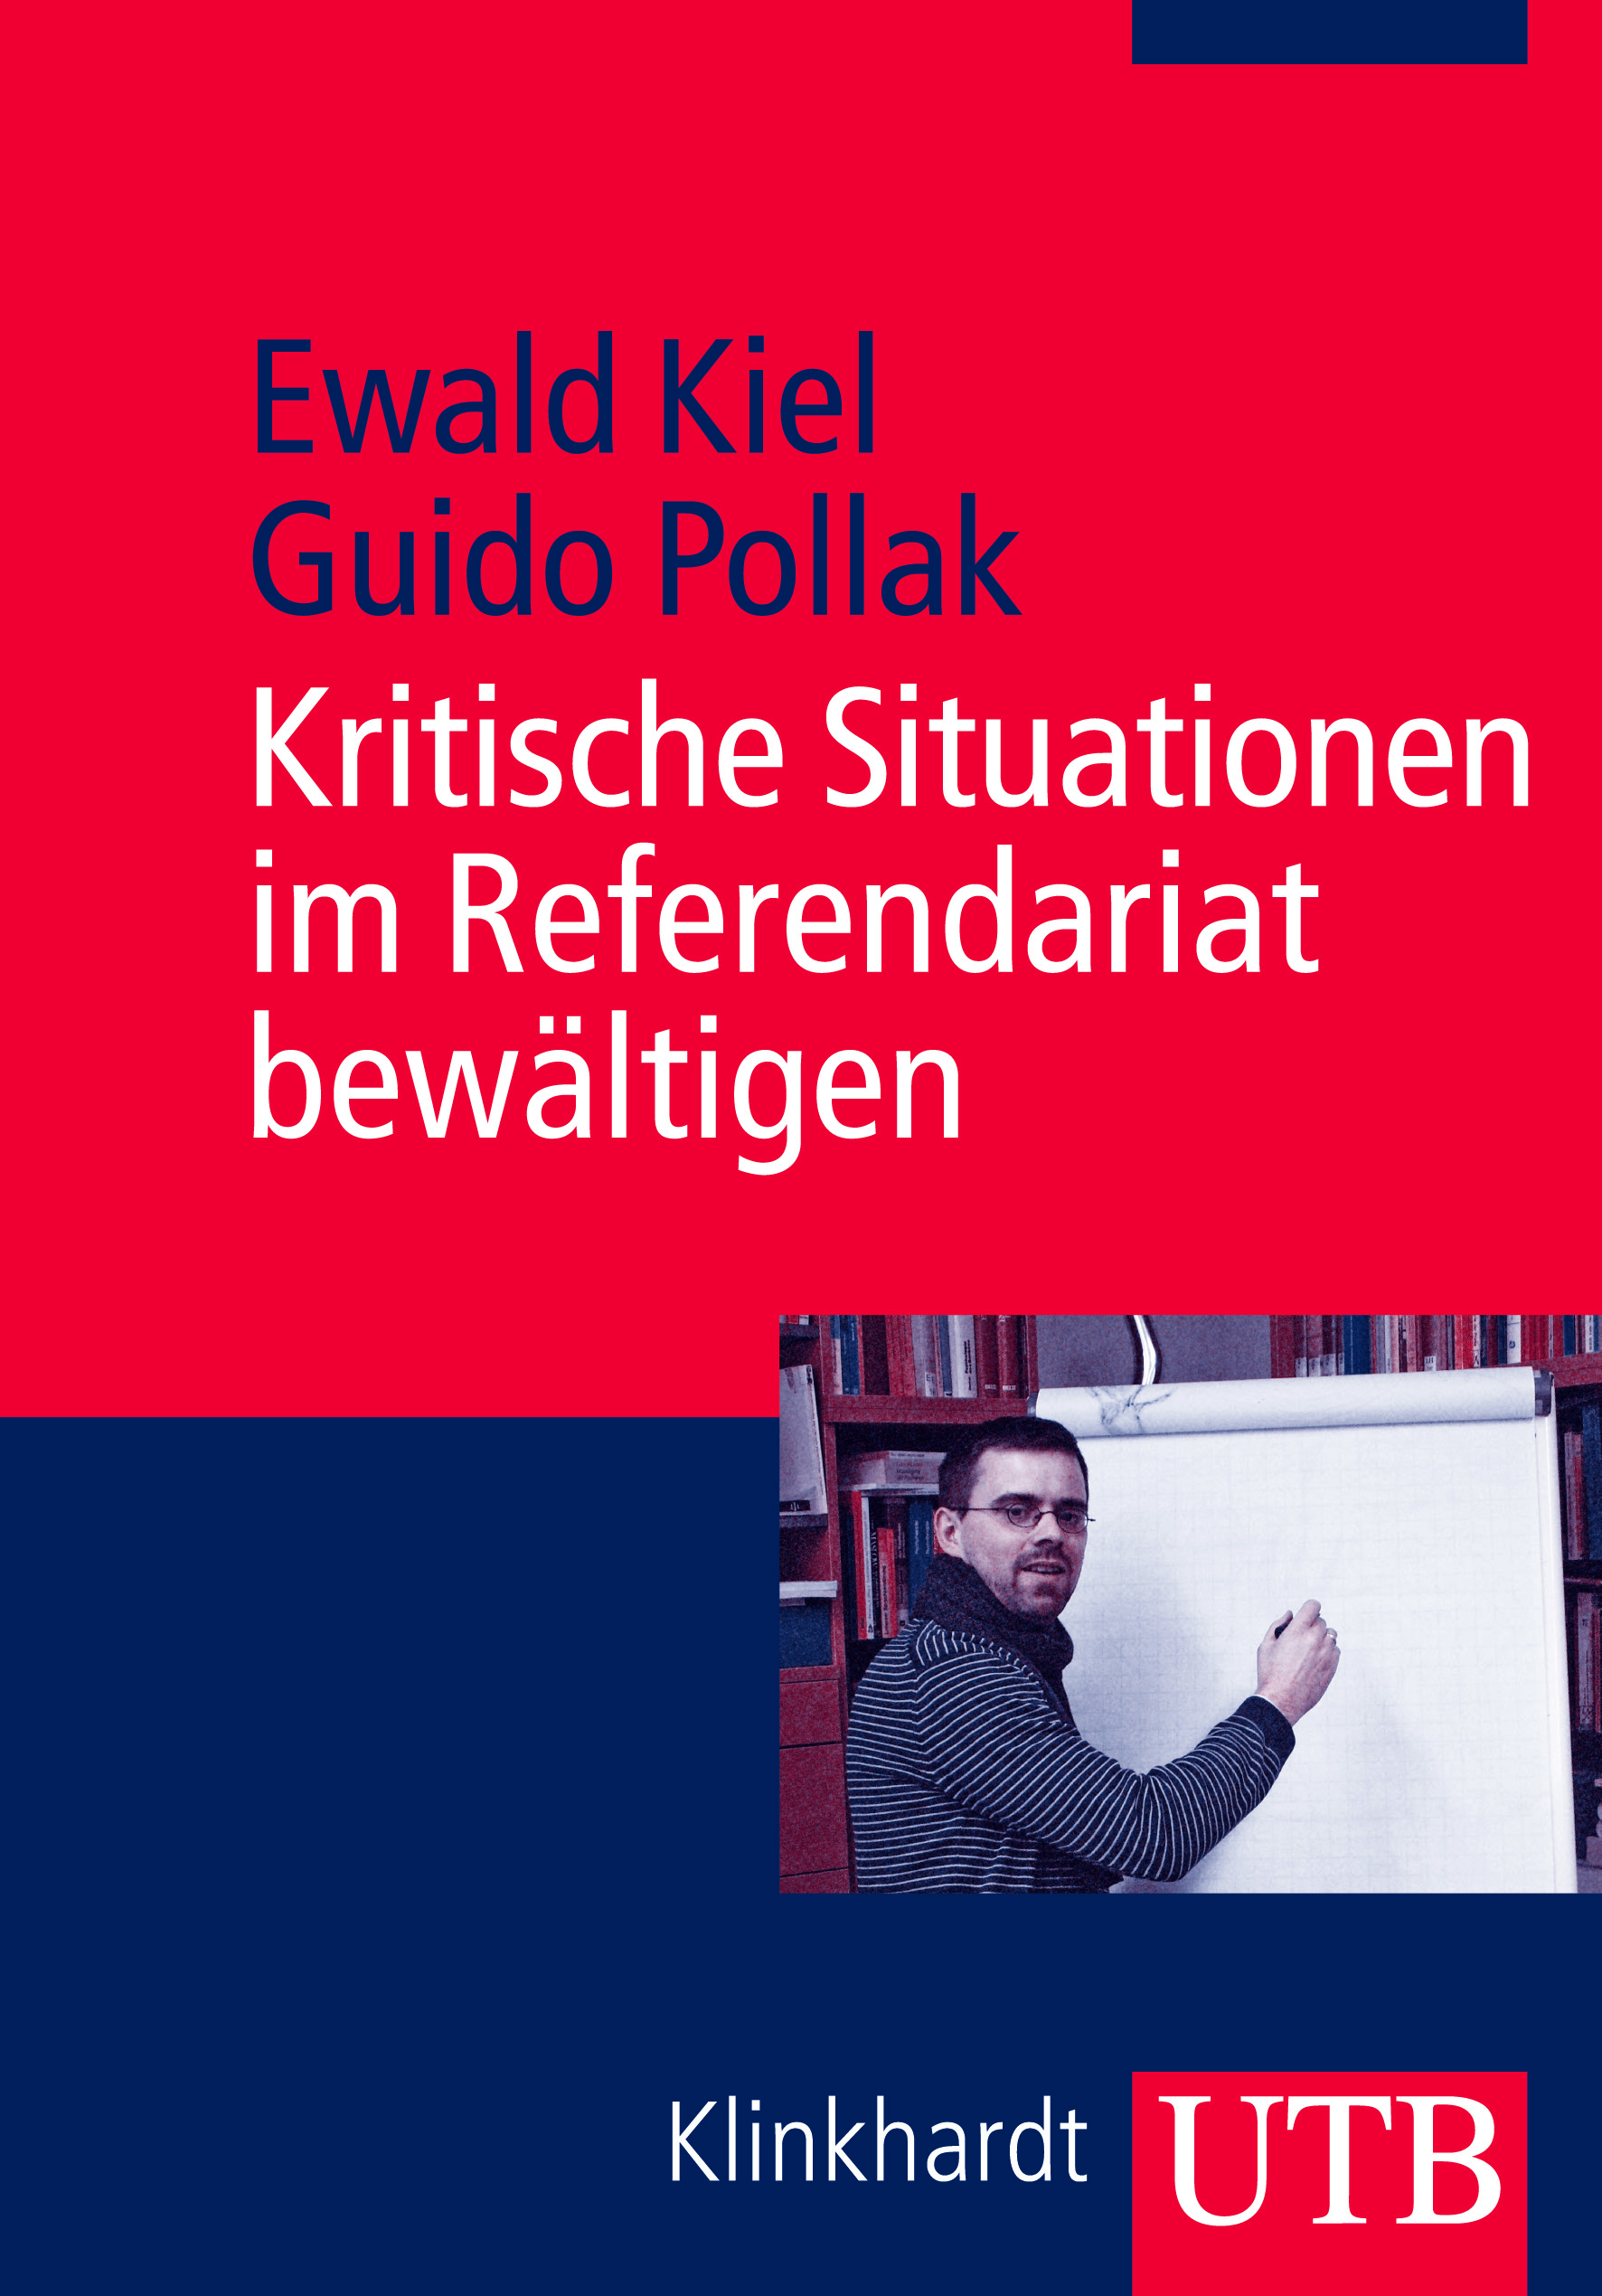 Ewald Kiel; Guido Pollak / Kritische Situationen im Referendariat bewältigen - Ewald Kiel, Guido Pollak